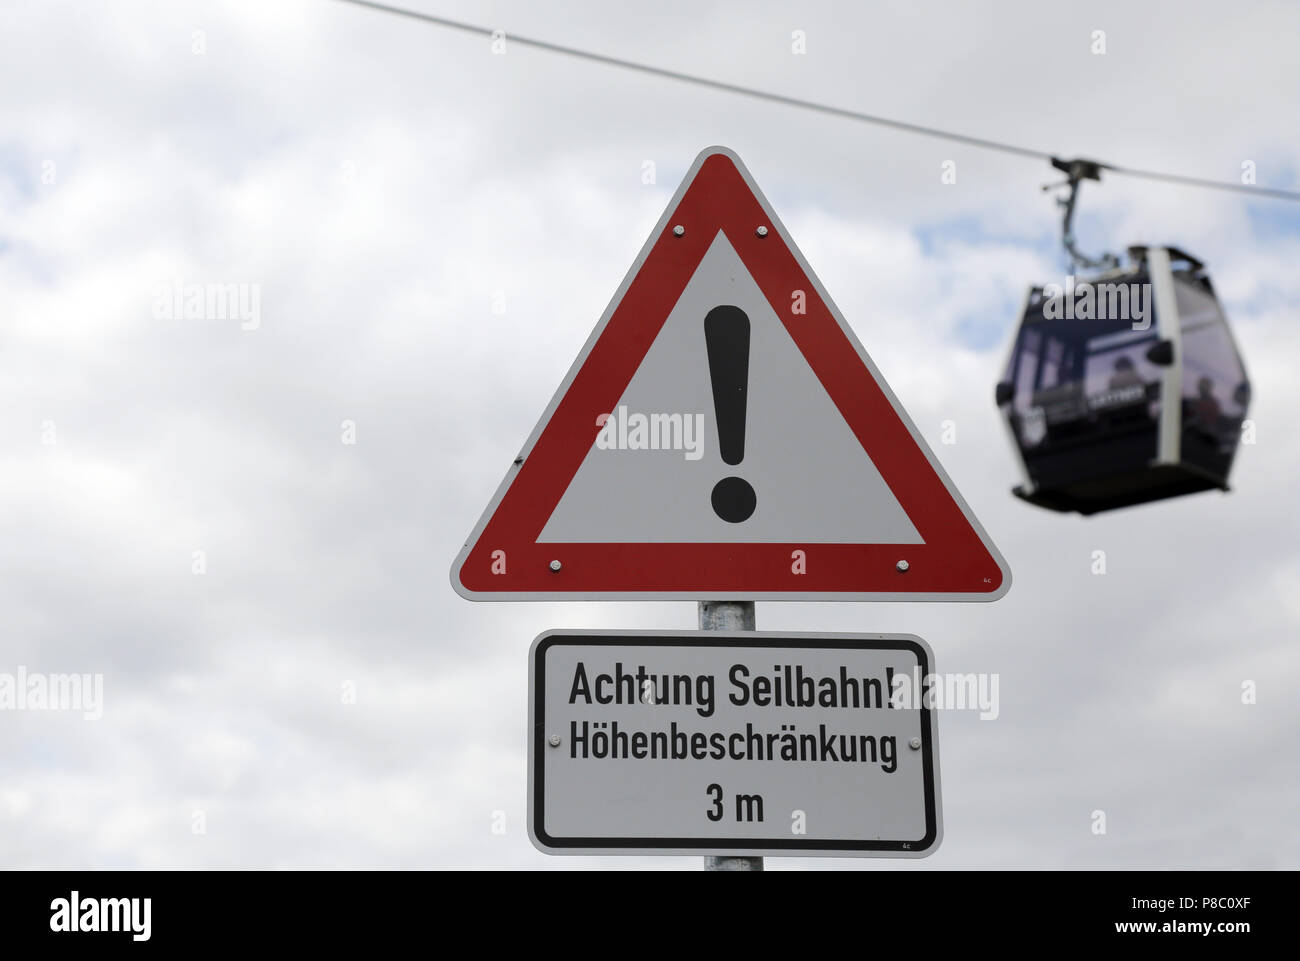 Berlin, Deutschland, unterzeichnen - Achtung kabel Auto - Vor einer Seilbahn Gondel Stockfoto